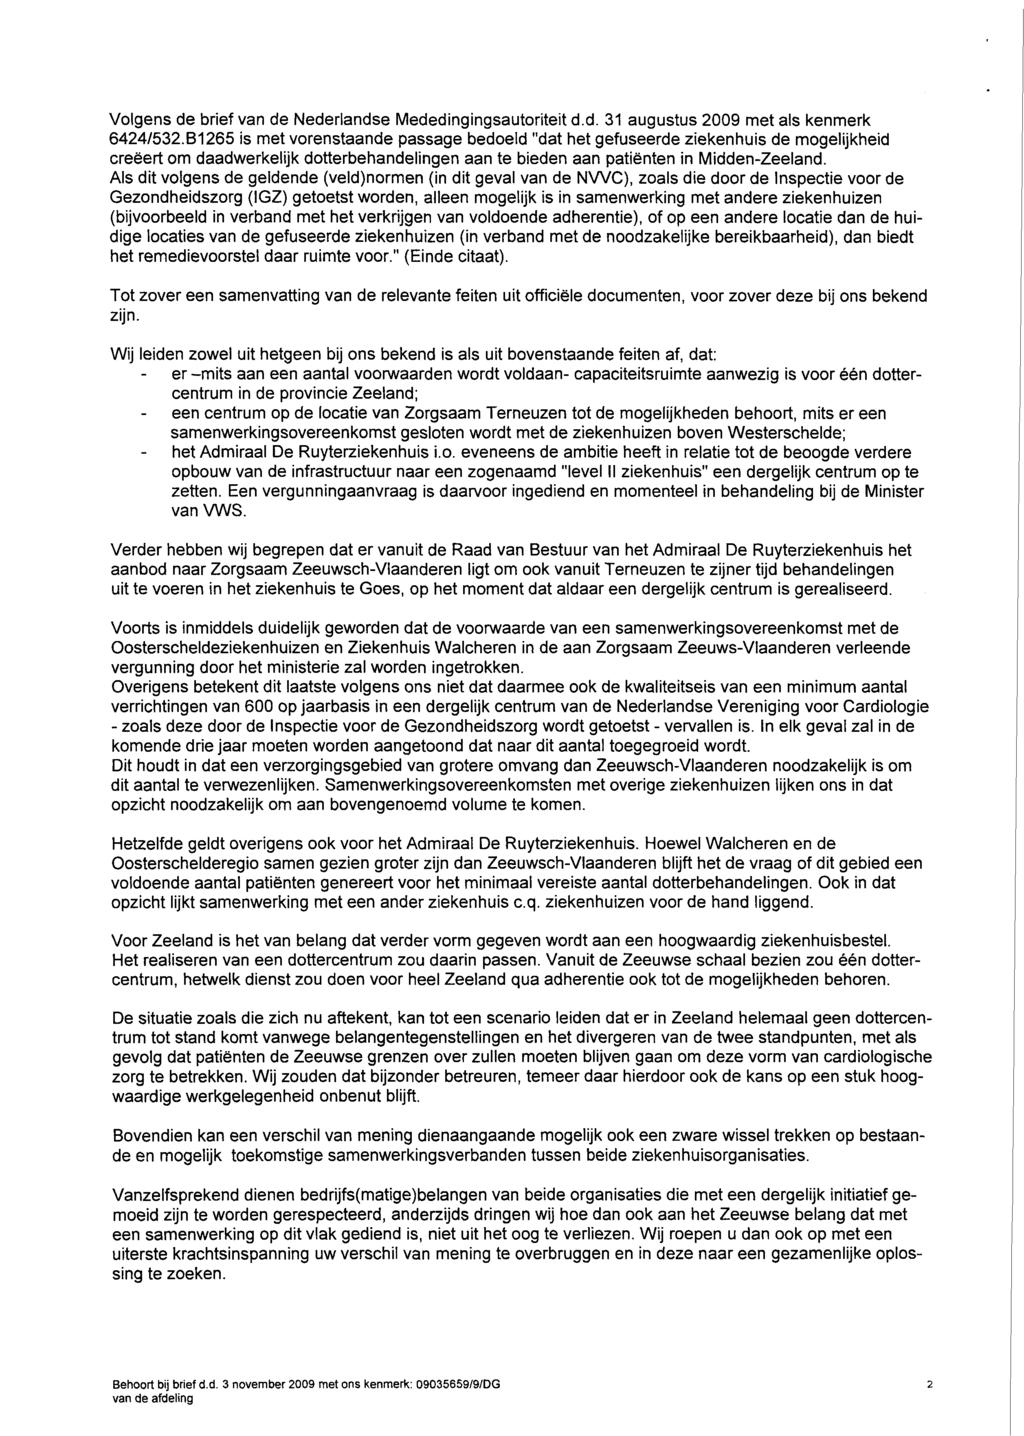 Volgens de brief van de Nederlandse Mededingingsautoriteit d.d. 31 augustus 2009 met als kenmerk 64241532.